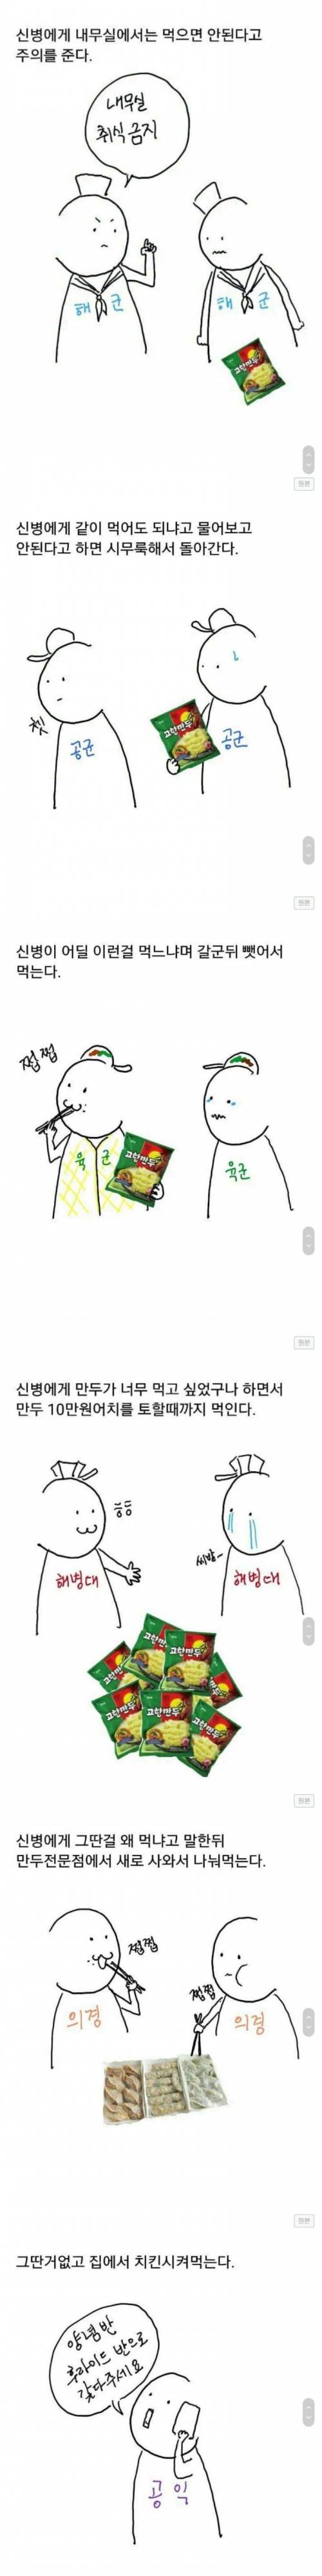 군대별 신병 만두먹기.jpg